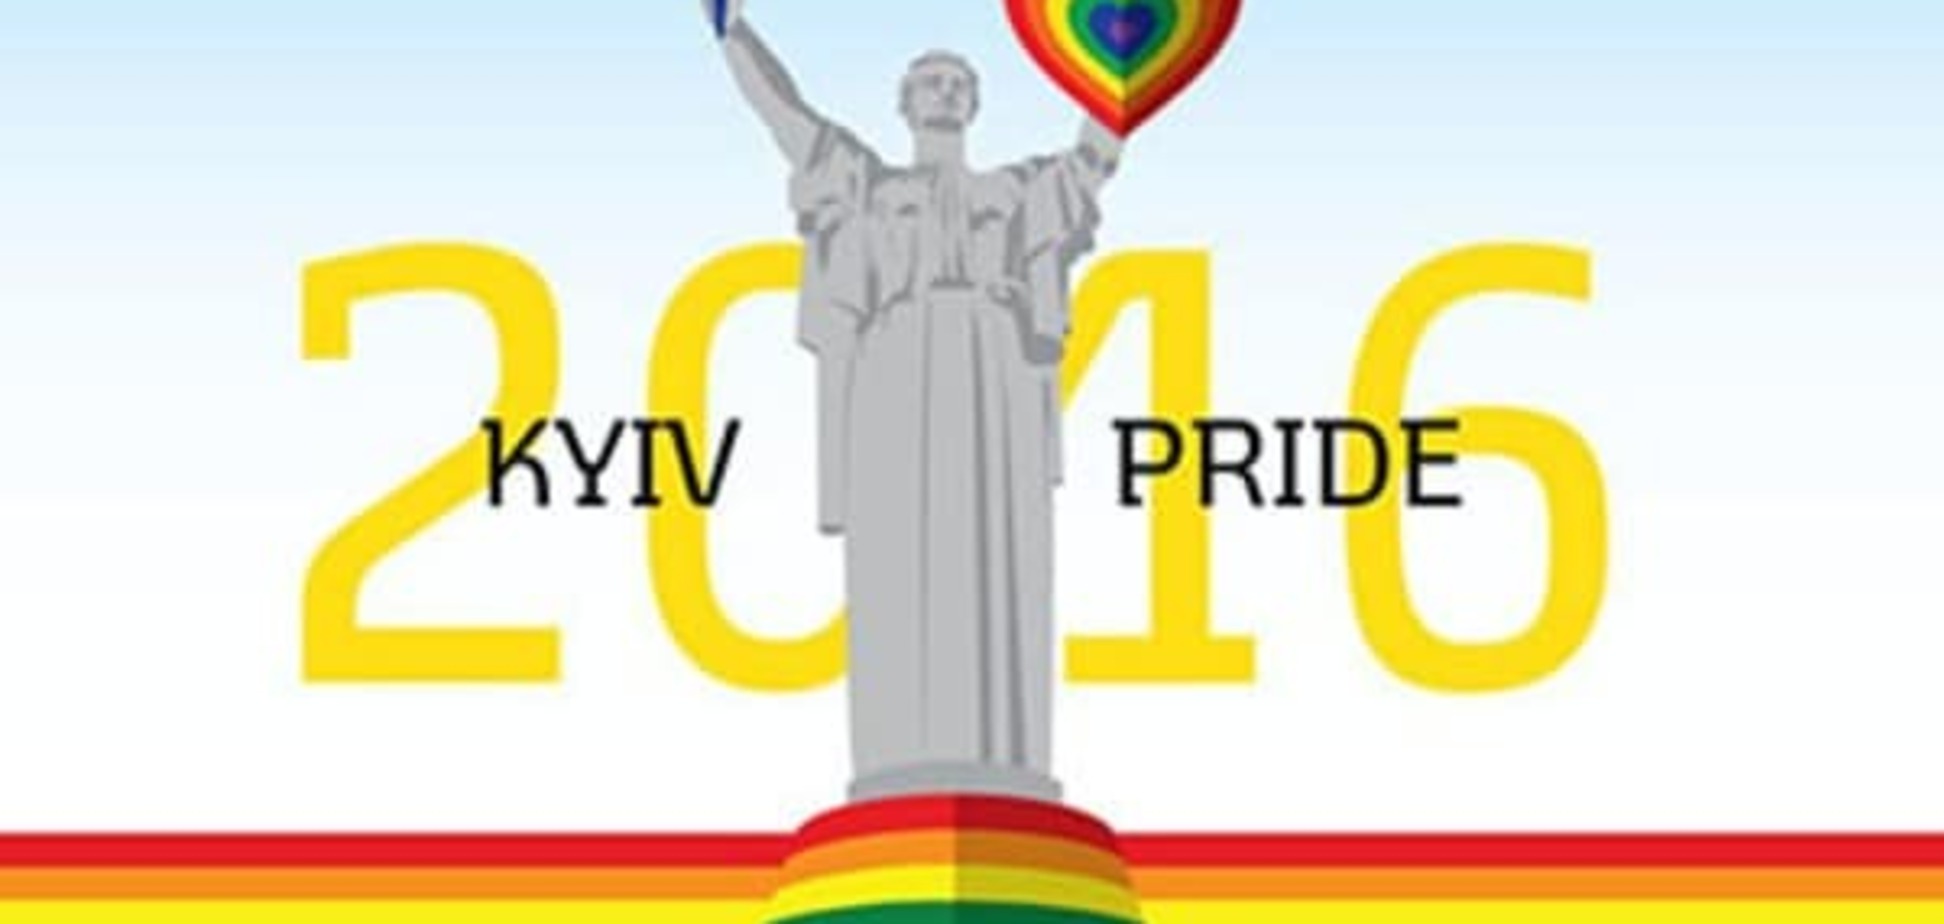 Kyiv Pride 2016